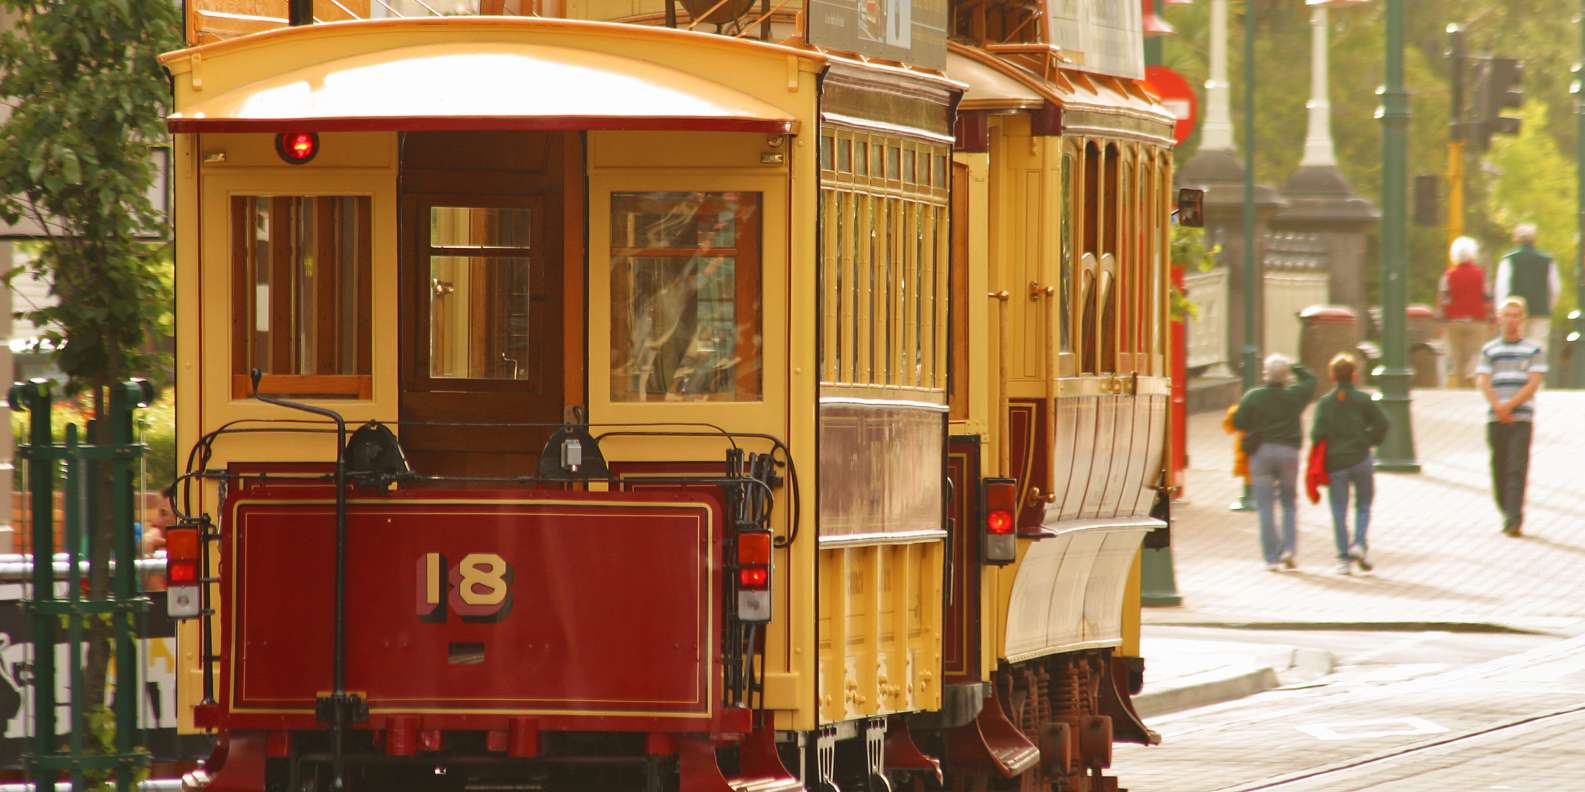 Трамвай по английски. Трамвай на английском. Ретро трамвай фото. Красивые картинки необычных мест со старинными трамваями.